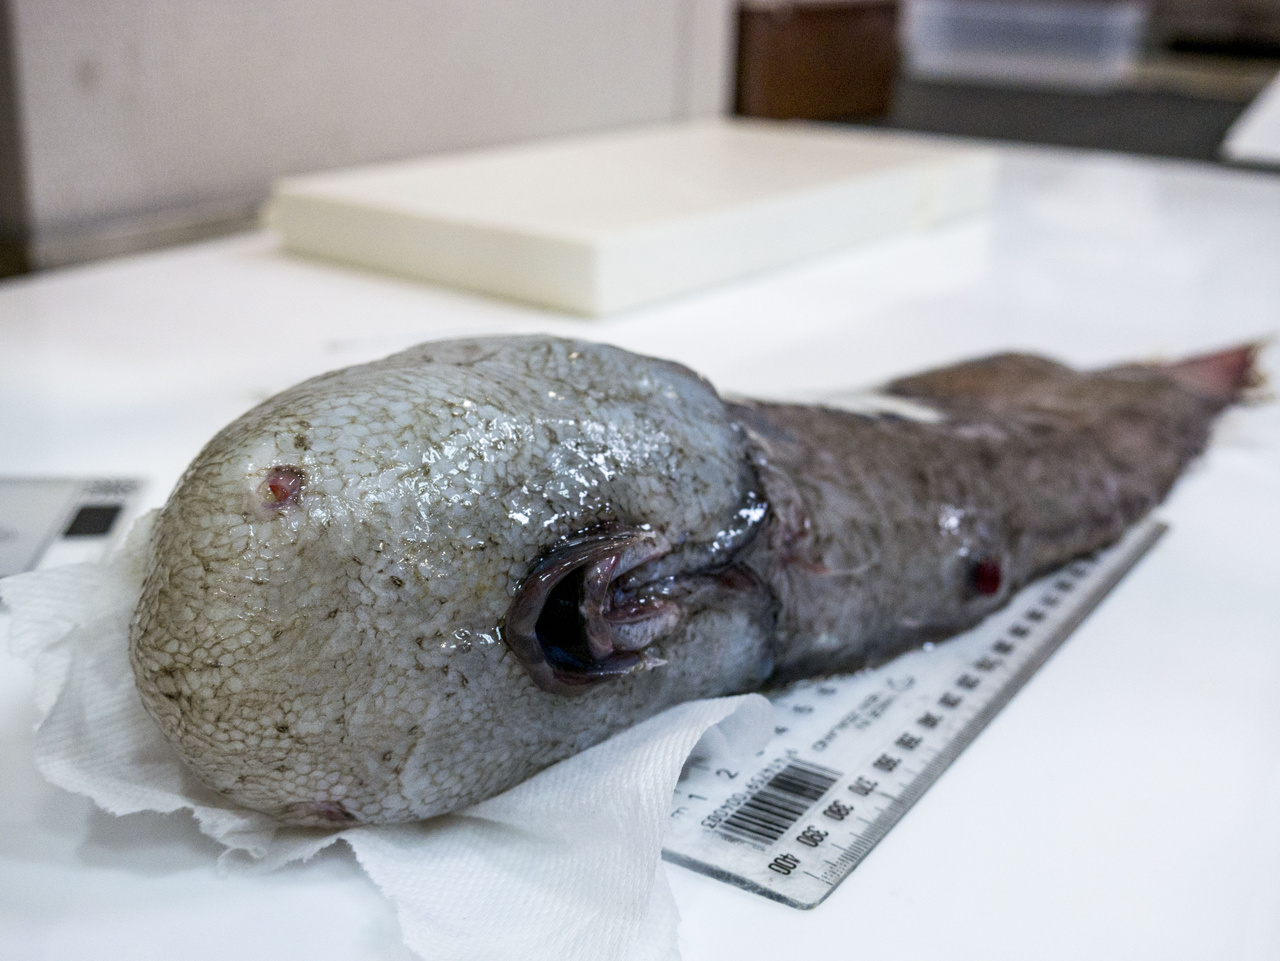 Erről az arctalan halról még a kutatók is azt hitték, hogy új fajt találtak, amíg bele nem botlottak a szakirodalomban. Ember 1873-ban látta először és eddig utoljára.